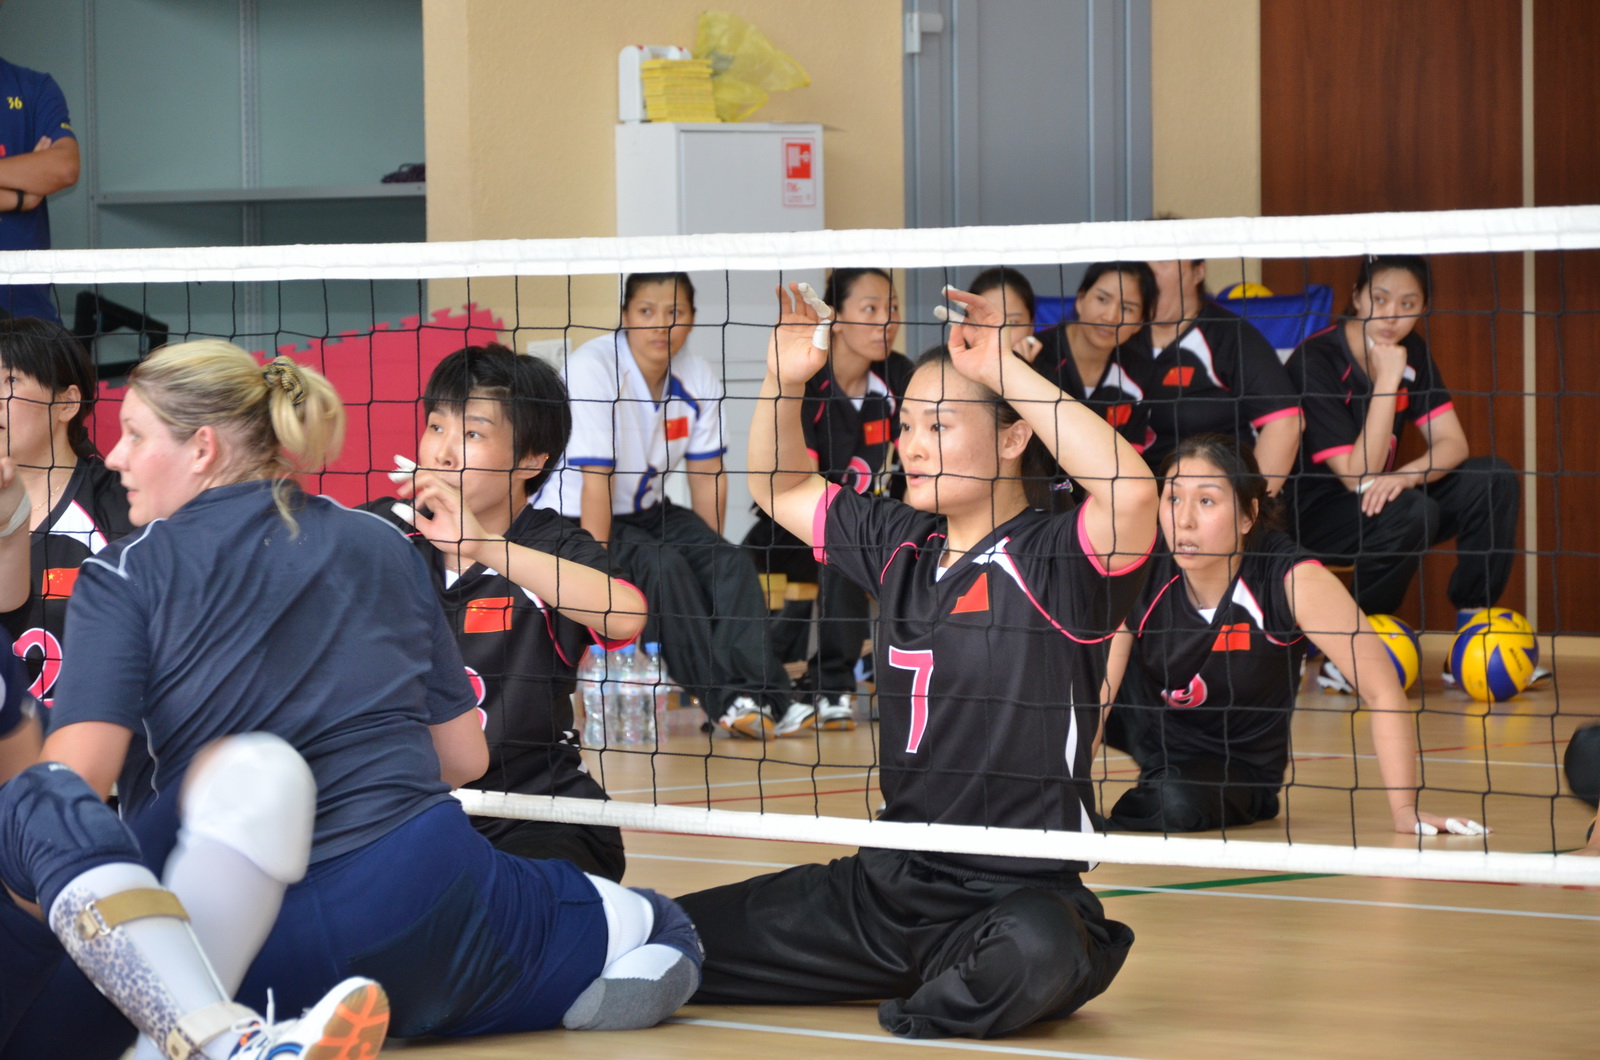 Товарищеская встреча сборной команды России со сборной команды Китая по волейболу сидя